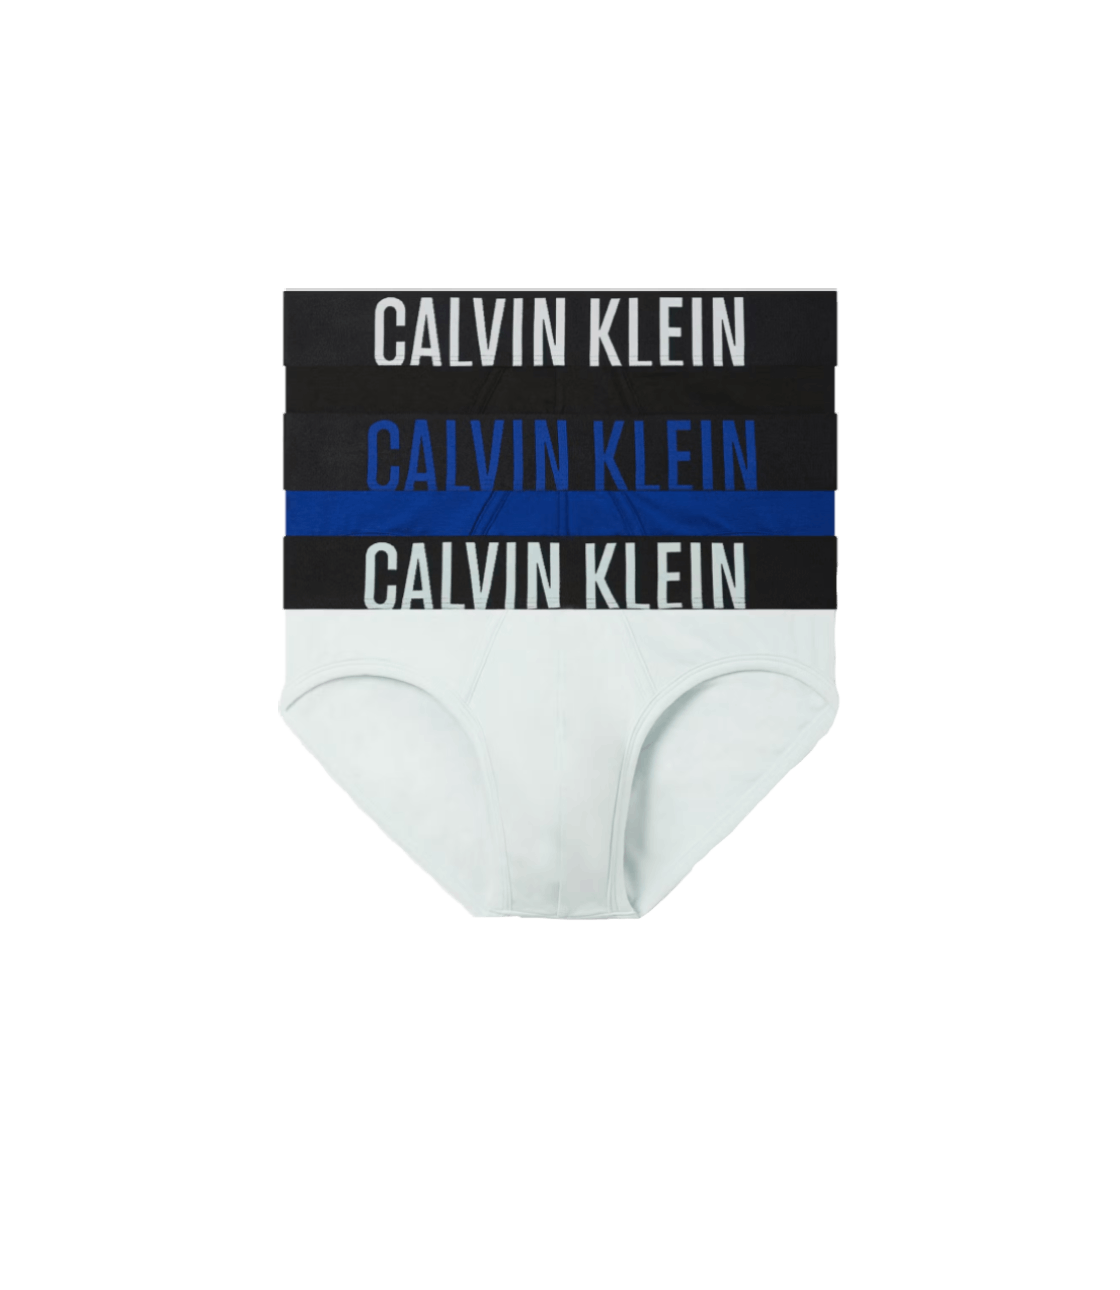 Tam Giác Calvin Klein 69